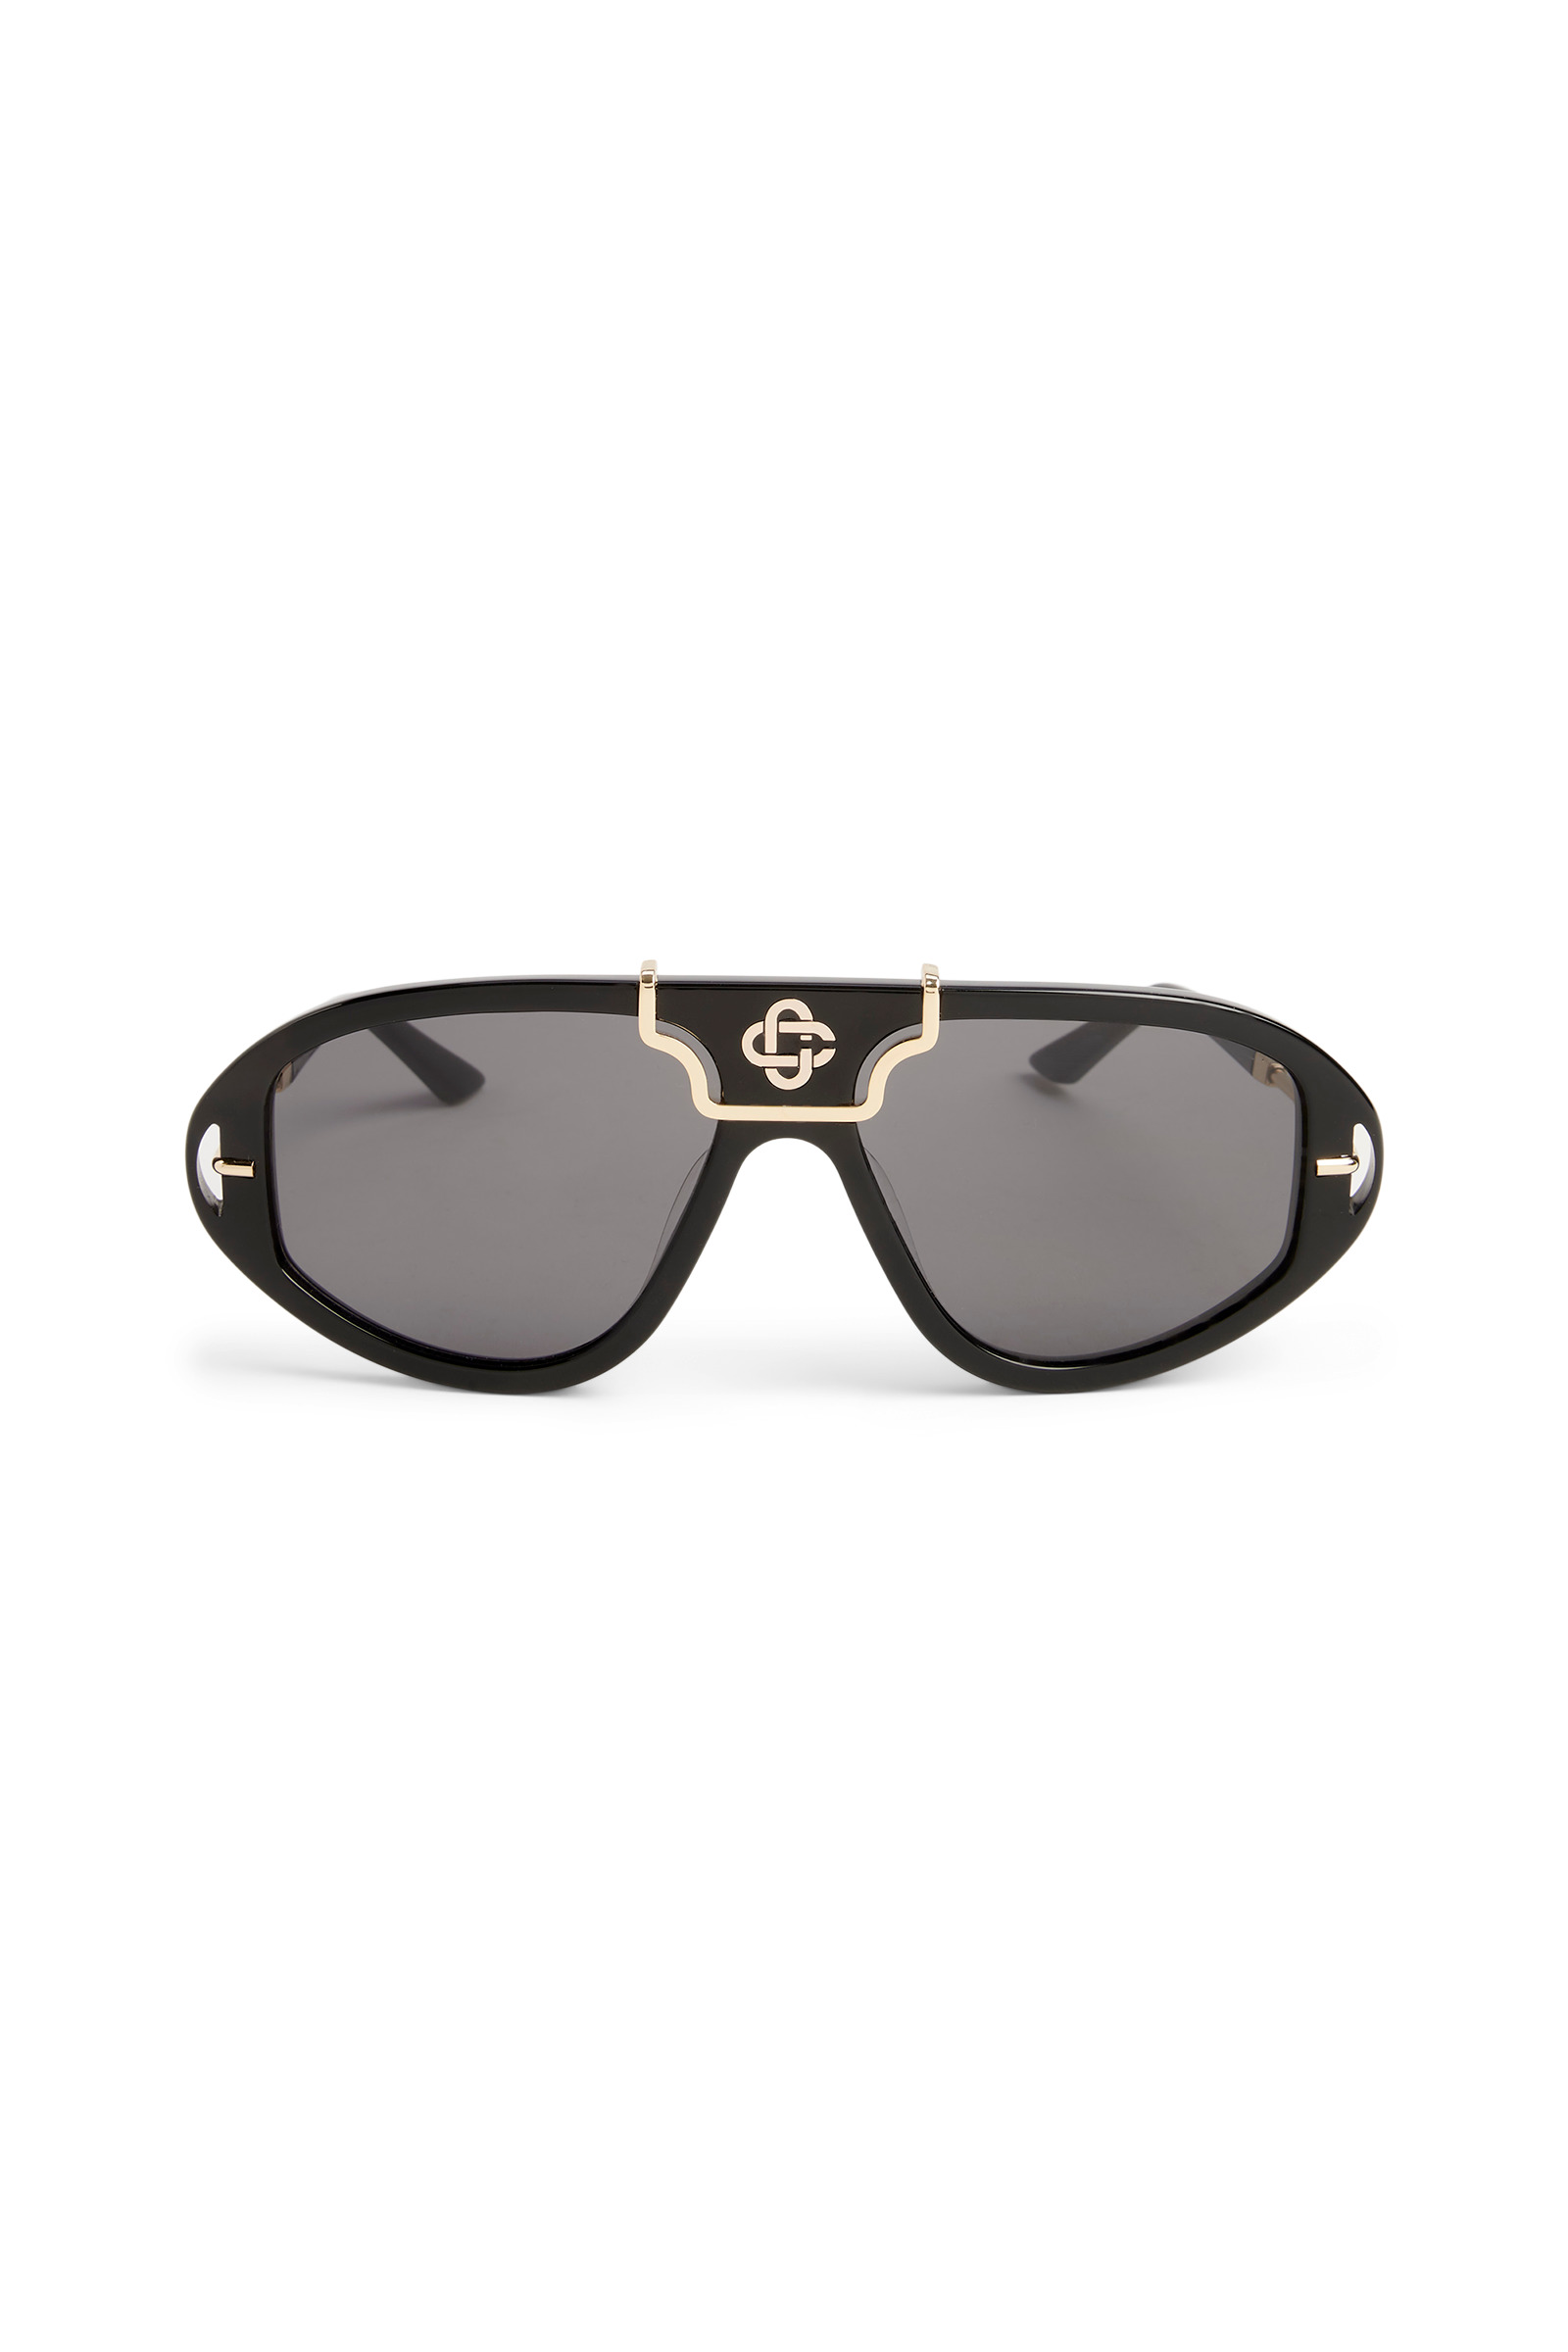 Black & Gold The Hacienda Sunglasses - 2